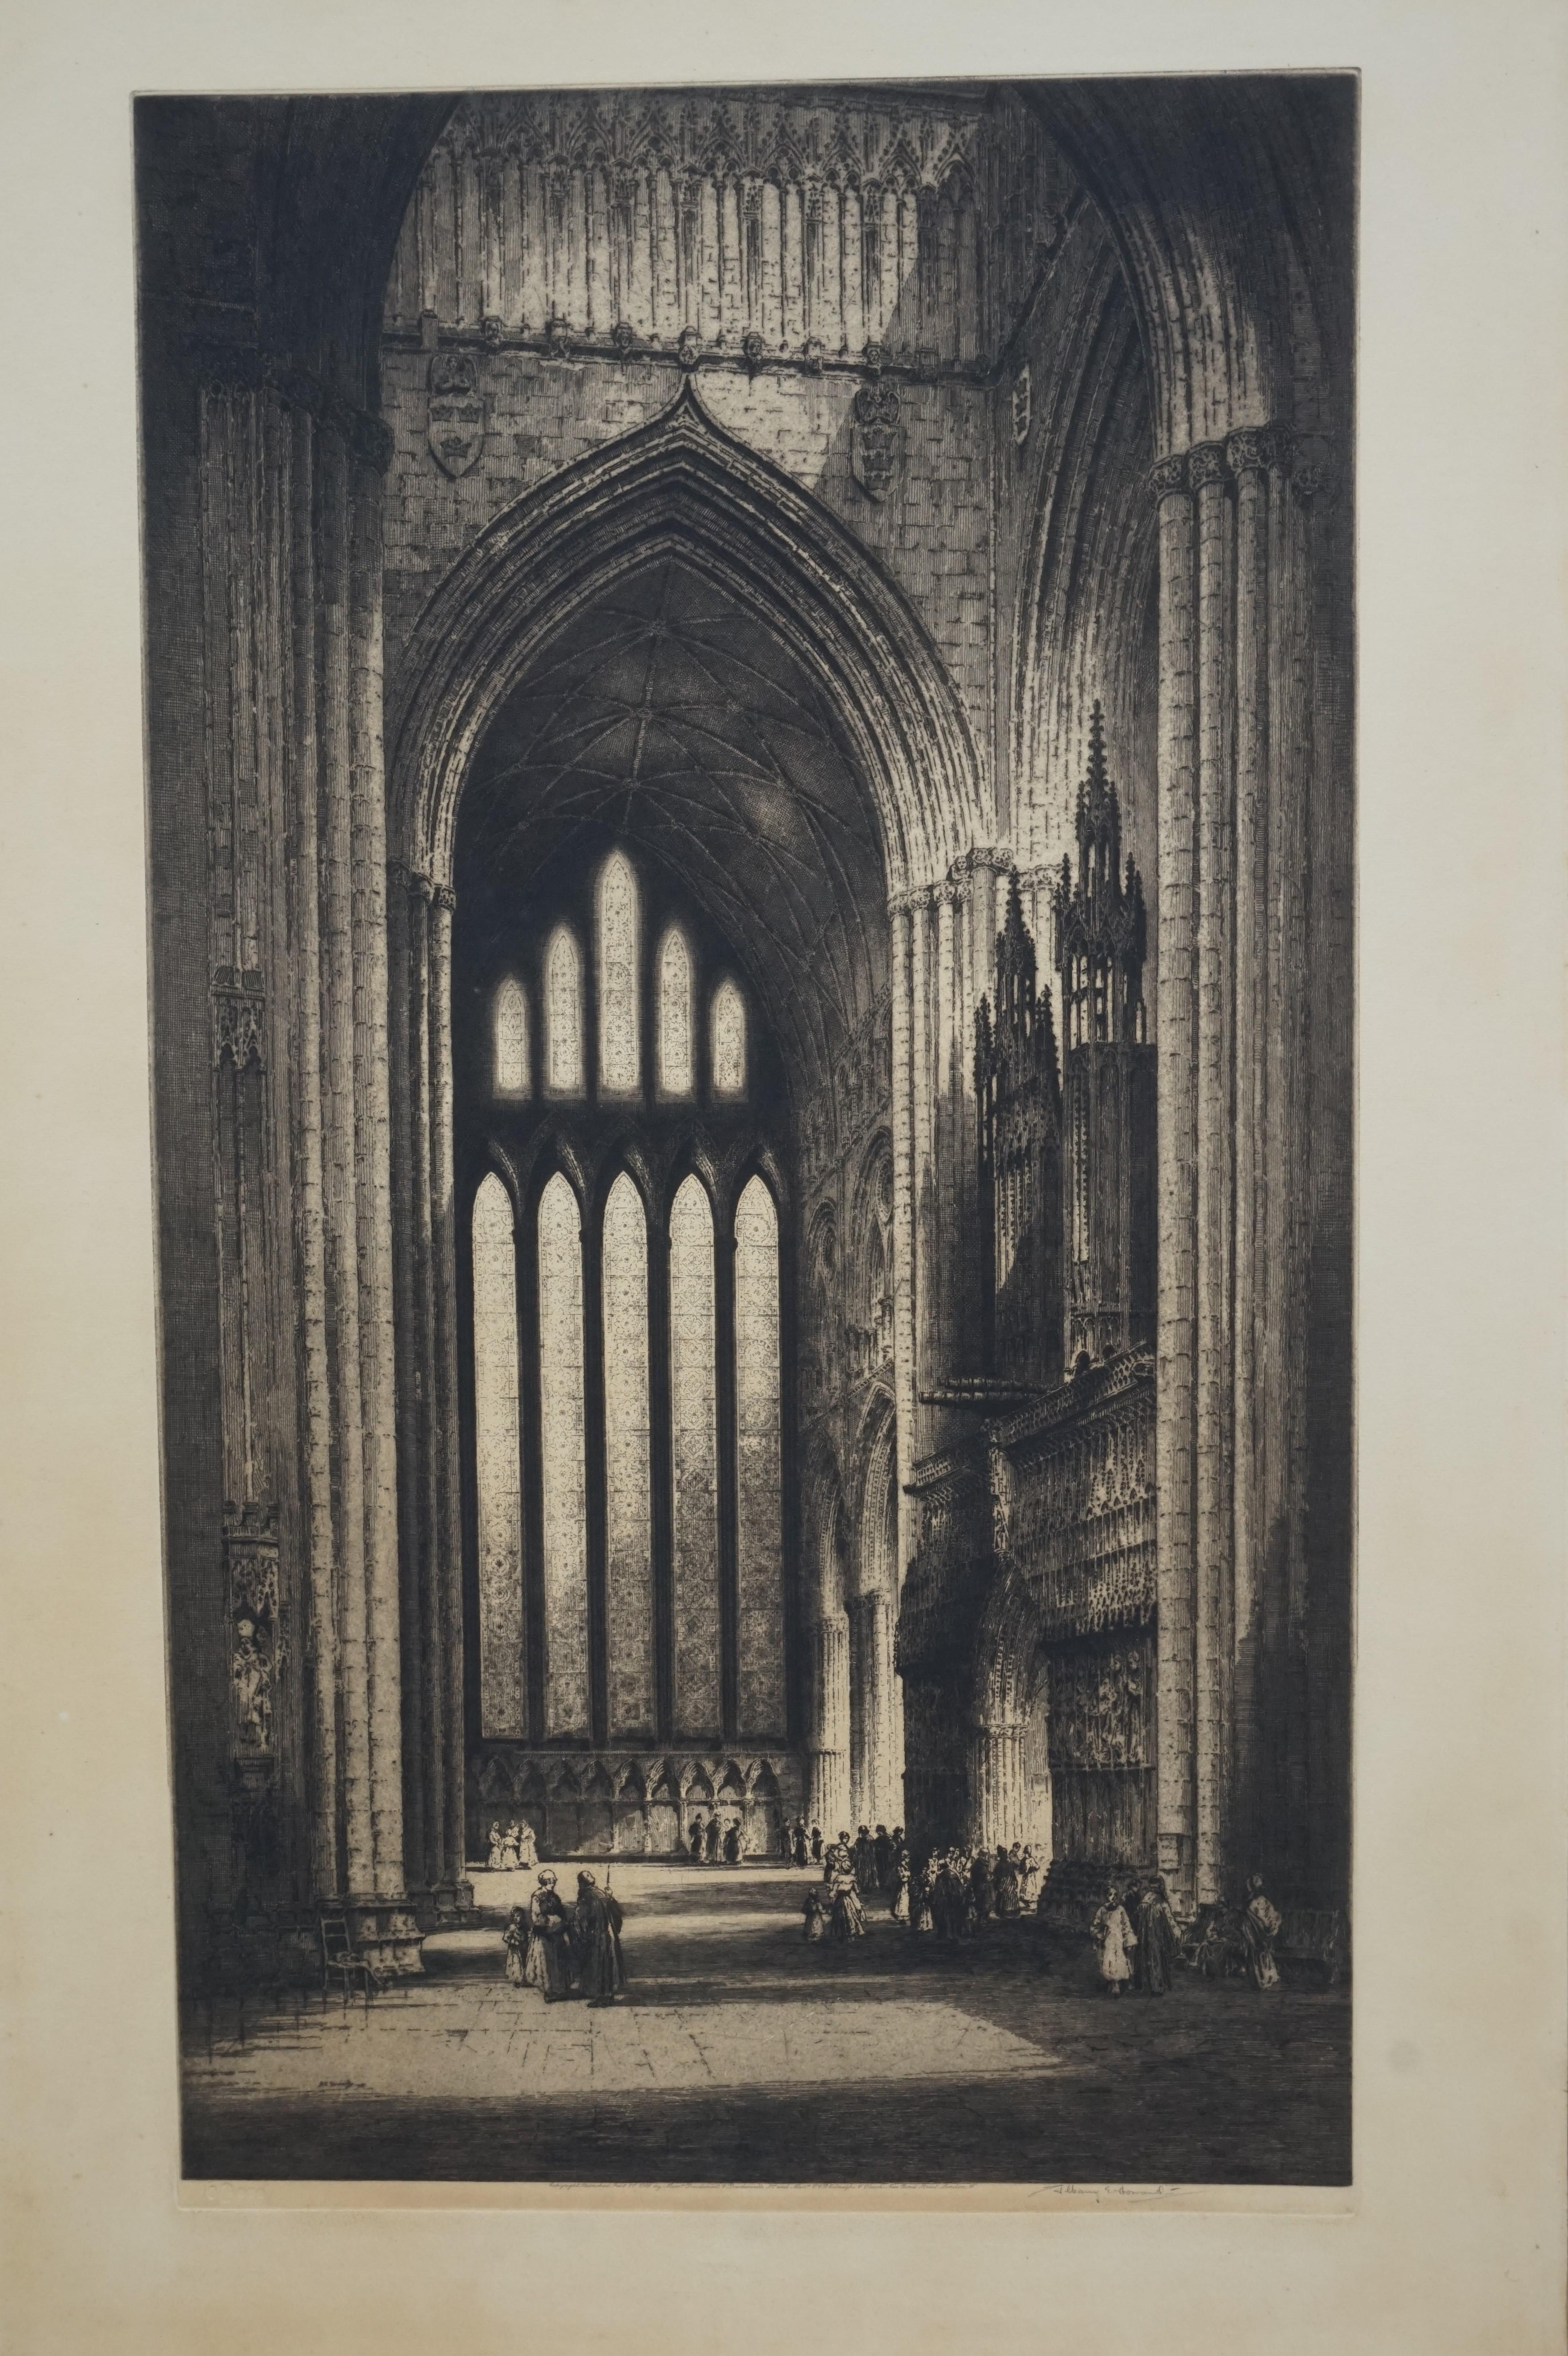 Seltene Größe und originale gotische Innenradierung der Kathedrale von York von Albany E. Howard (1872-1936).

Dieses großformatige und unglaublich kunstvolle Werk der Gotik wurde von einem der besten Künstler auf diesem Gebiet Anfang des 20.